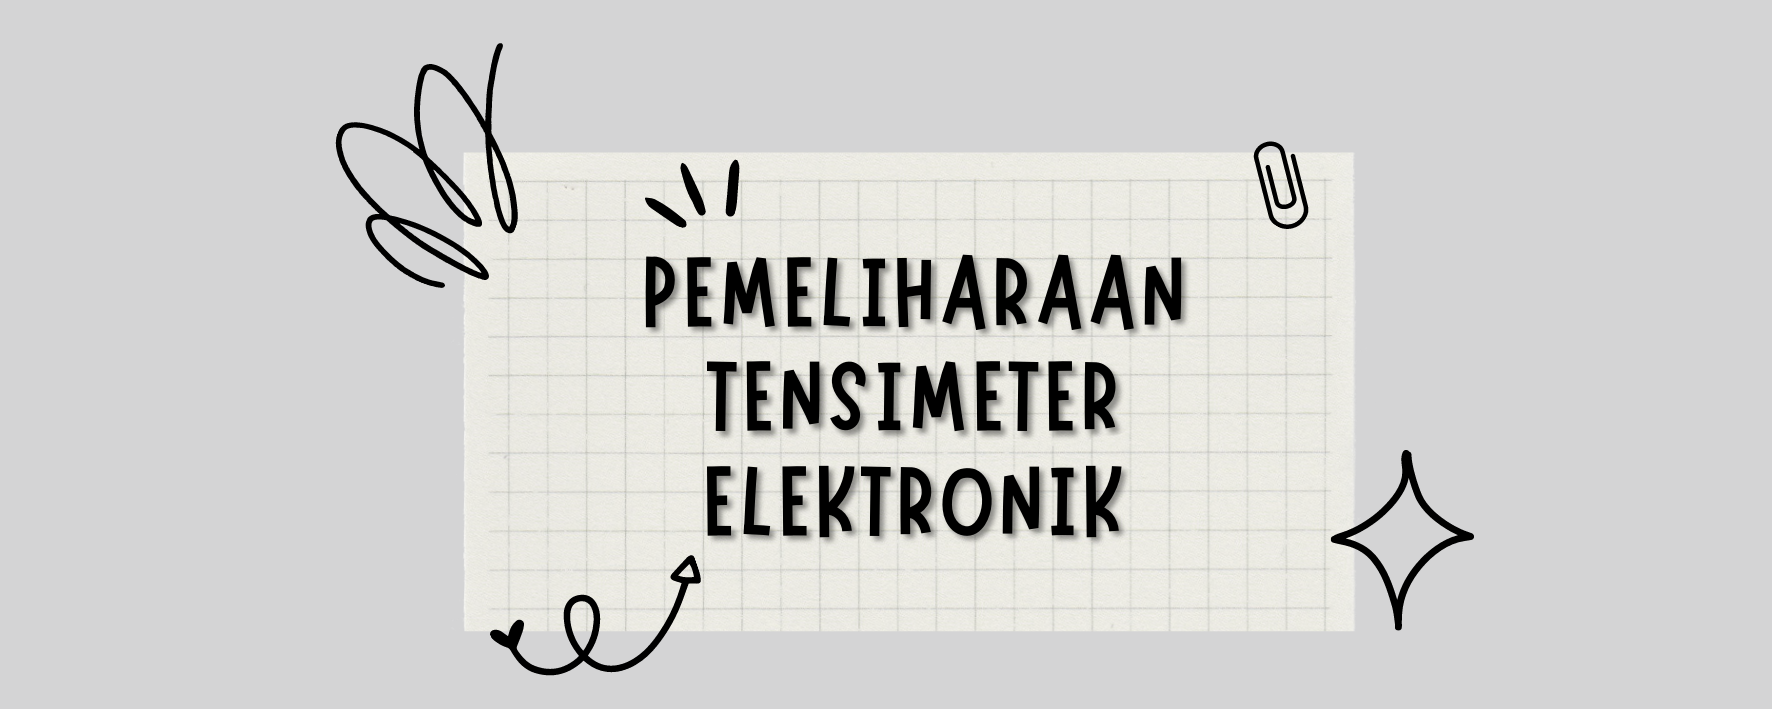 Pemeliharaan Tensimeter Elektronik